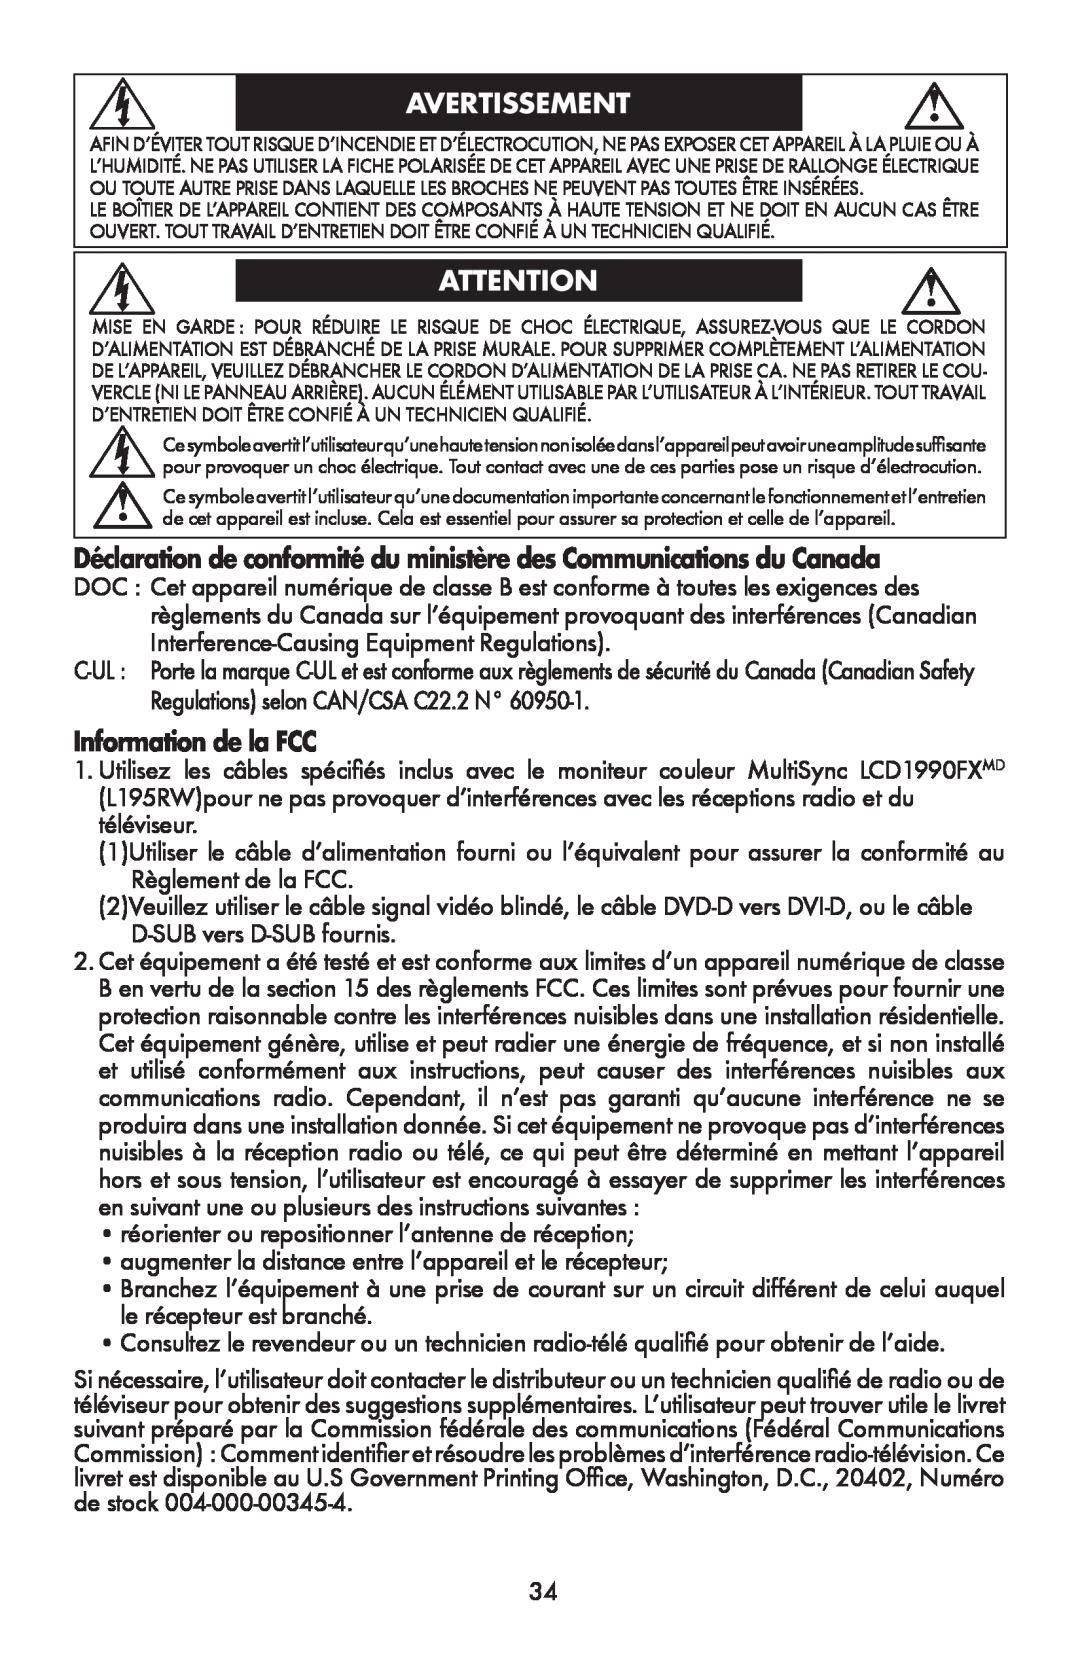 NEC LCD1990FXTM Avertissement, Déclaration de conformité du ministère des Communications du Canada, Information de la FCC 